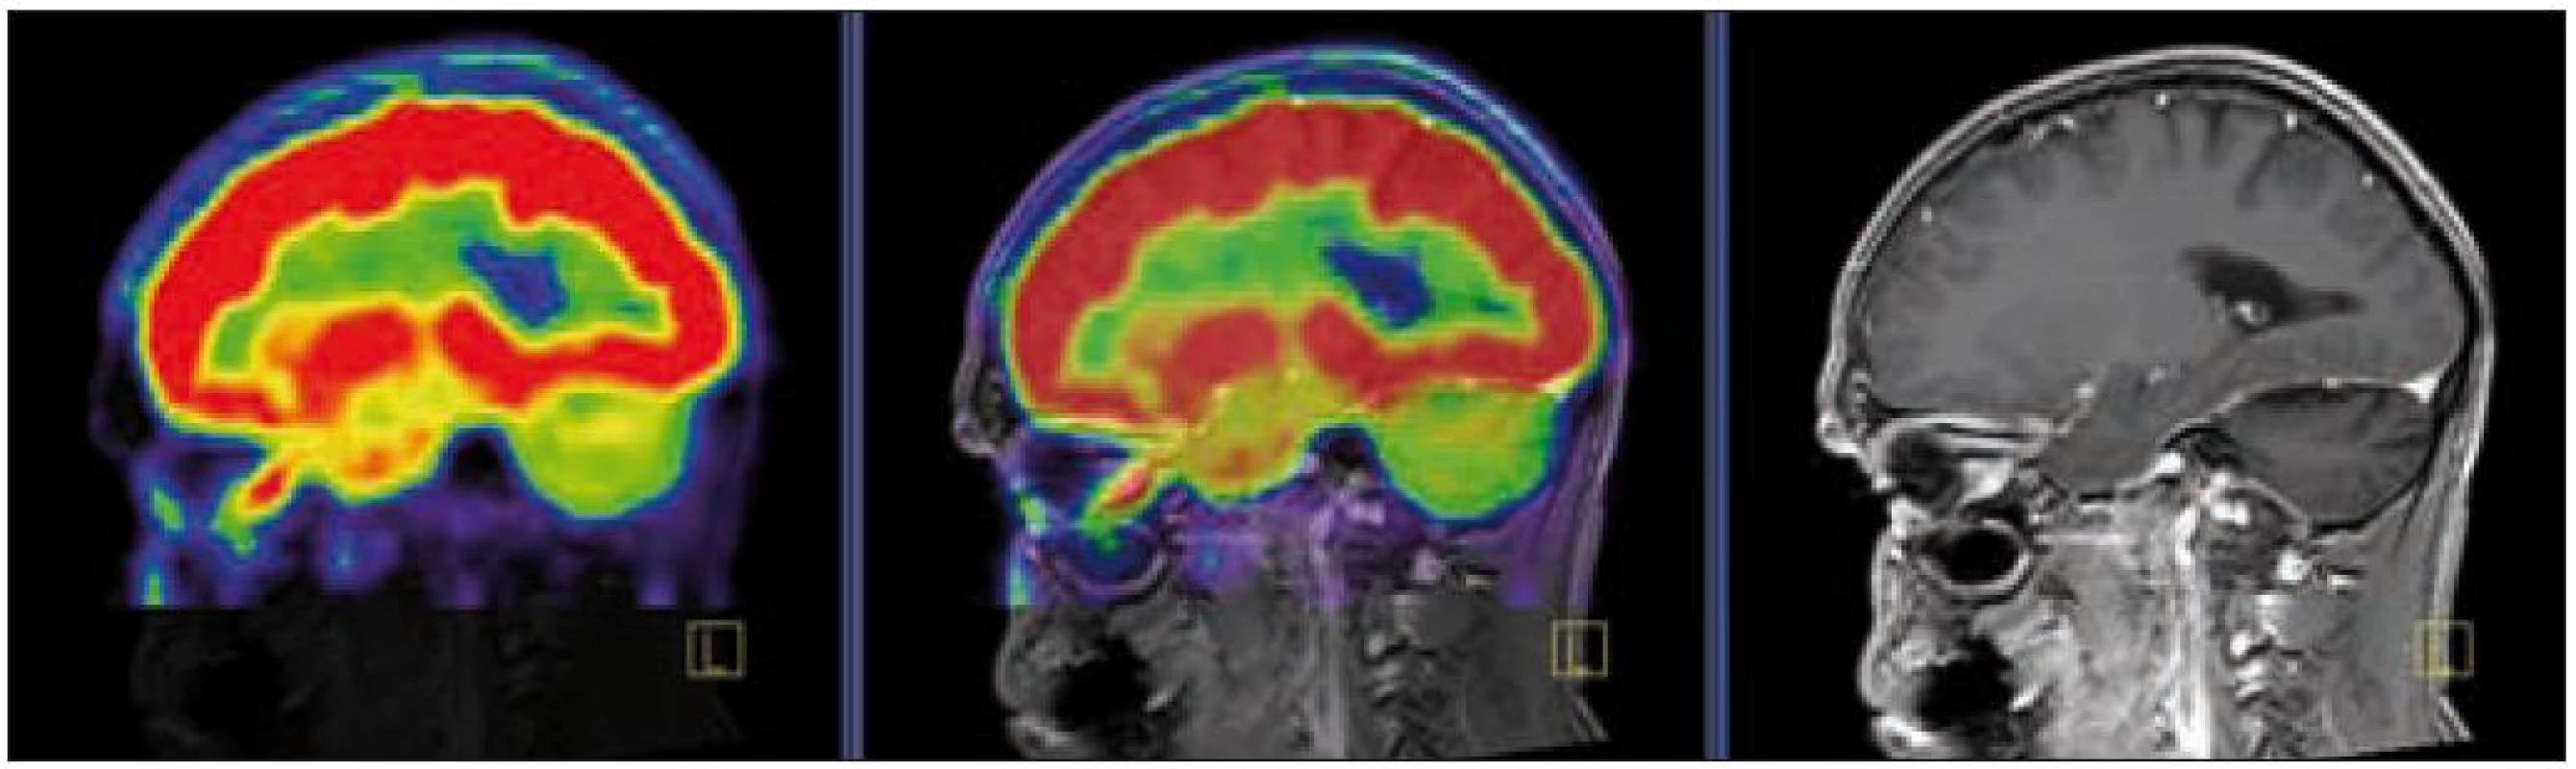 PET – low dose CT mozku. Snížená akumulace fluorodeoxyglukózy v oblasti cerebella, sagitální projekce atrofické změny cerebella v CT zobrazení.